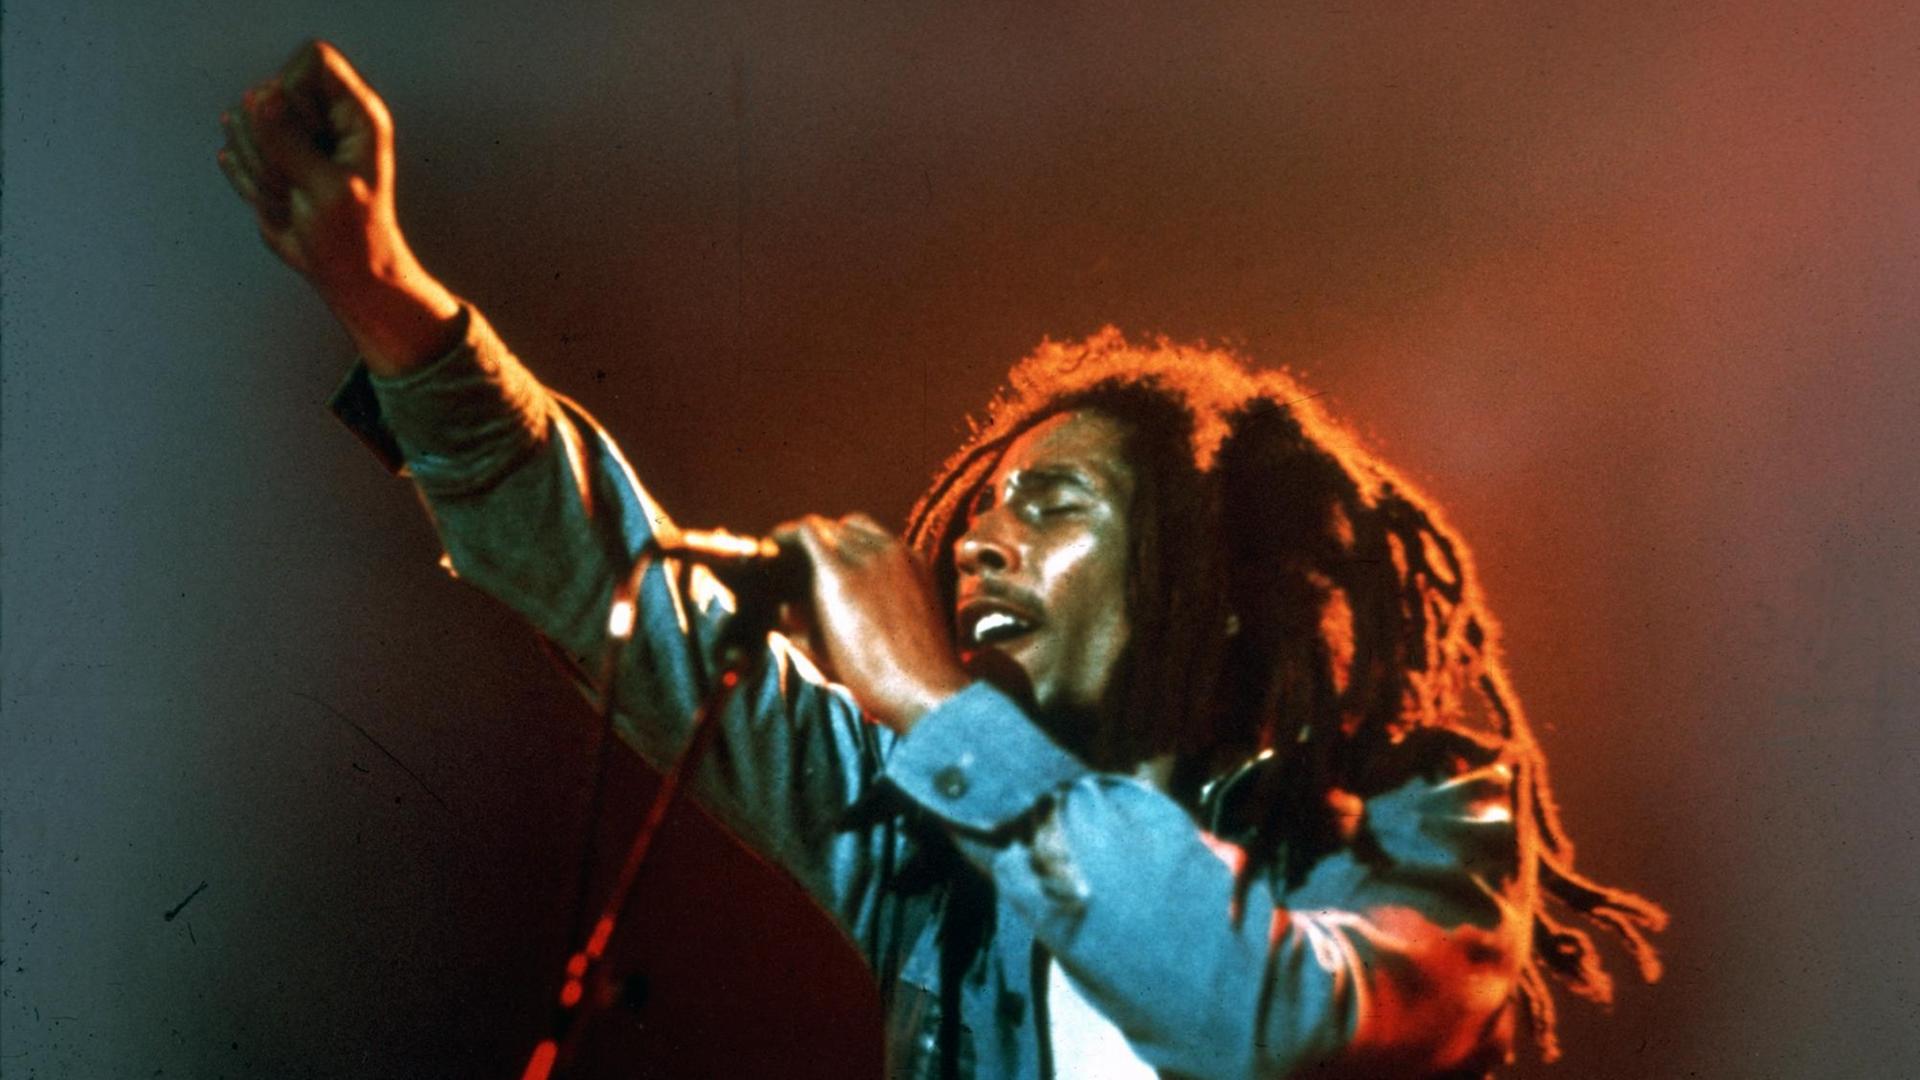 Bob Marley auf der Bühne am Mikrofon, streckt die rechte Faust in die Höhe.